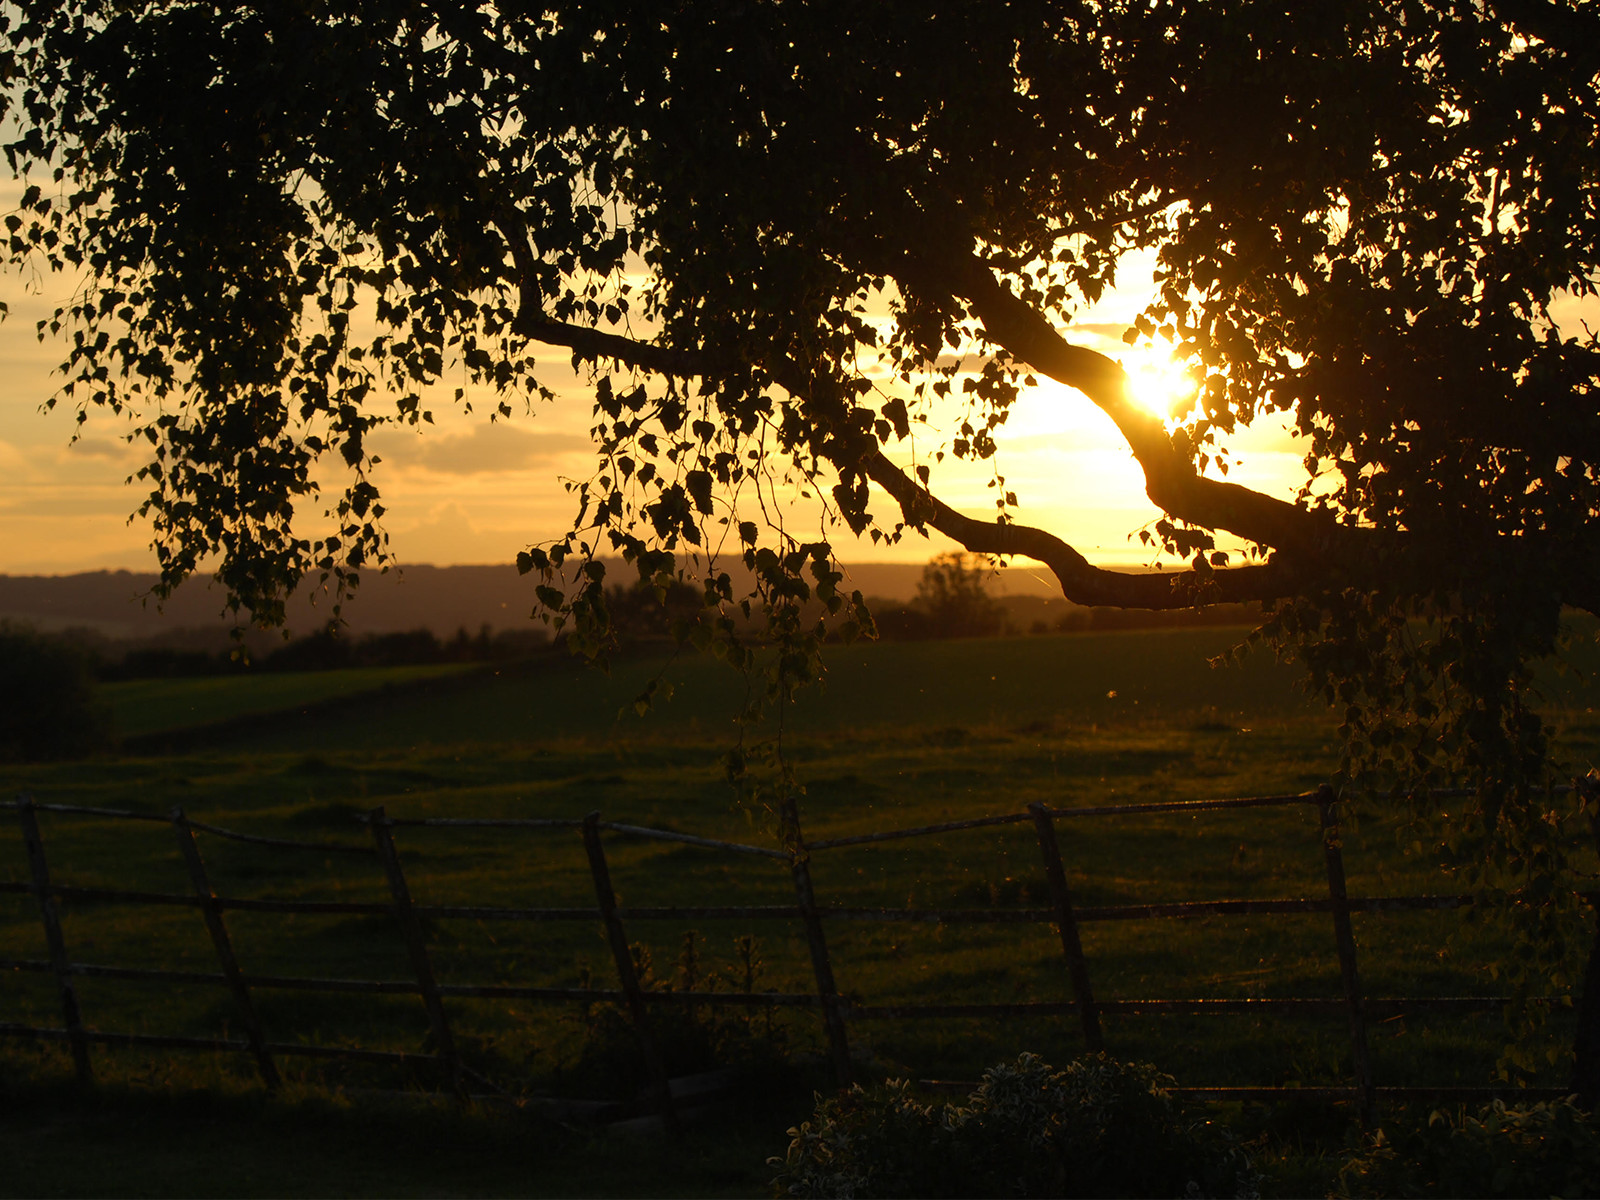 Enjoy the sunset over the farm